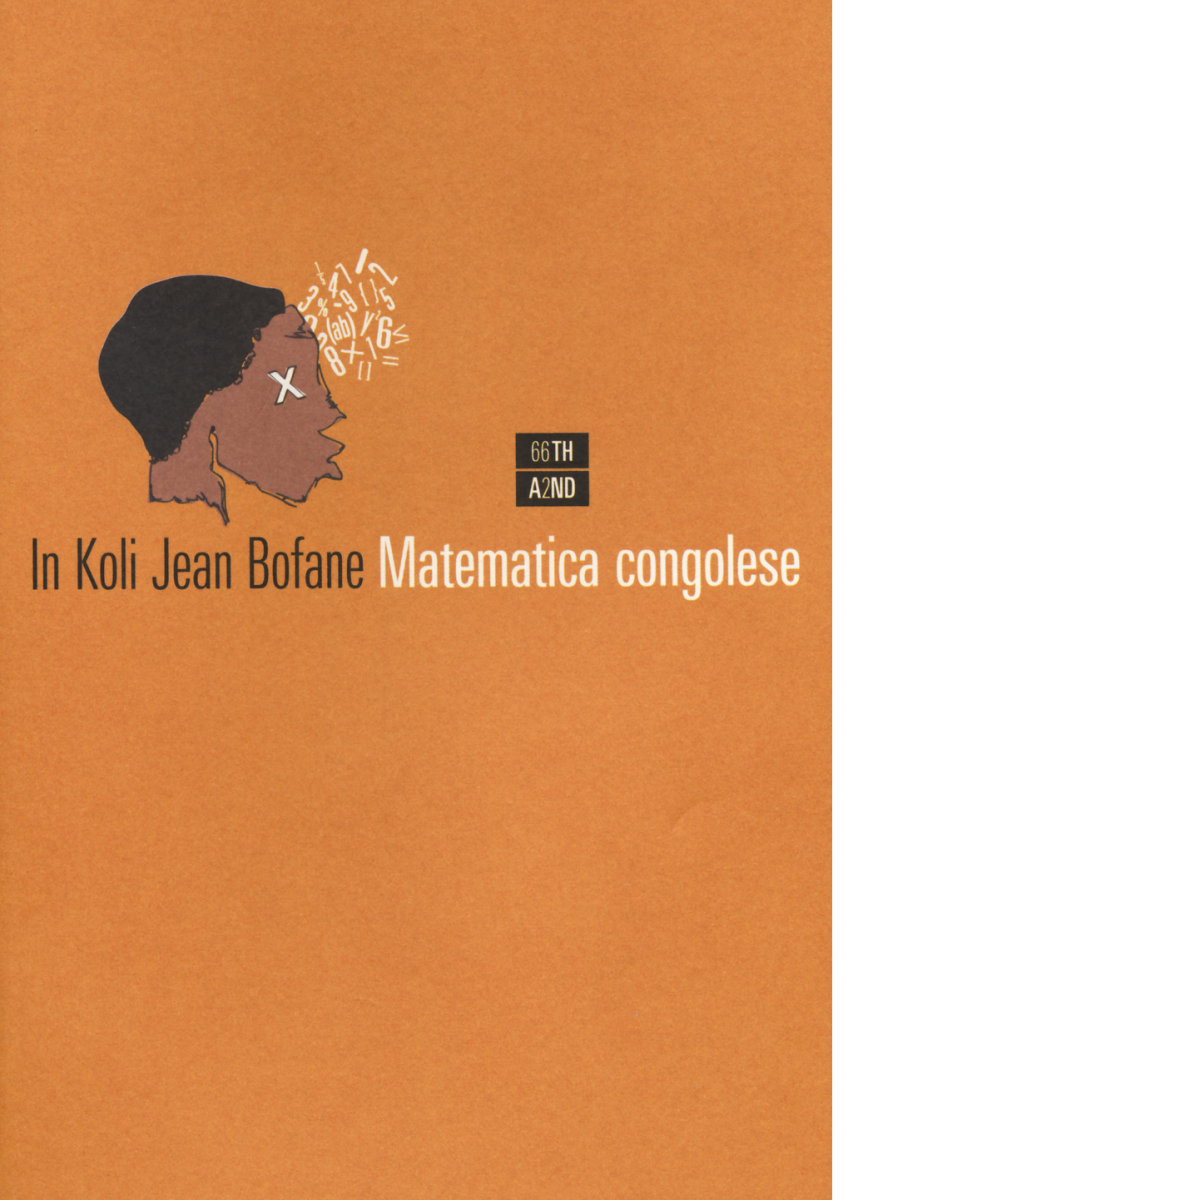 Matematica congolese di In Koli Jean Bofane,  2014,  66th And 2nd libro usato